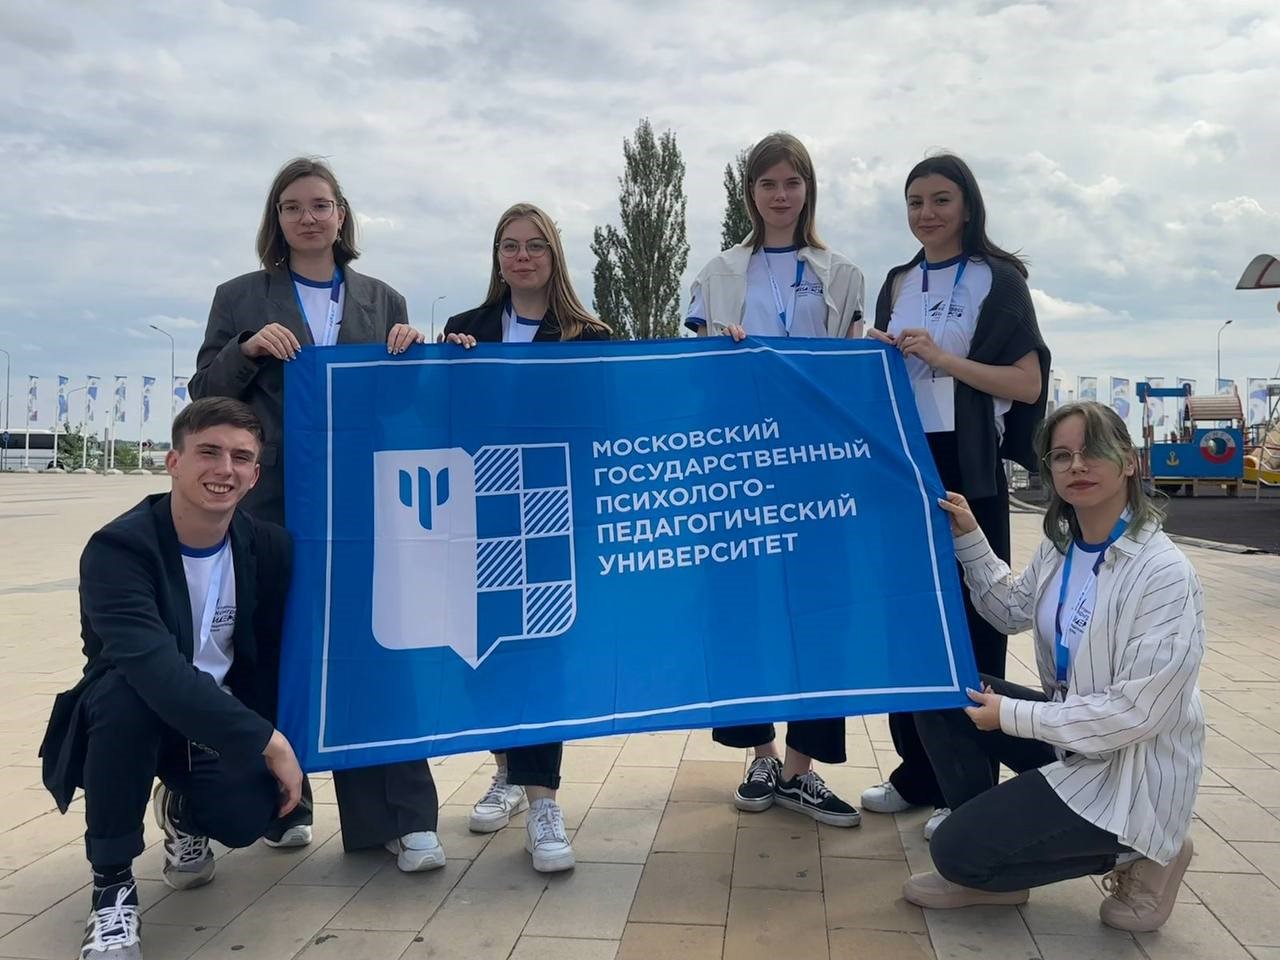 Студенты МГППУ в Волгограде на открытии студенческого конгресса 